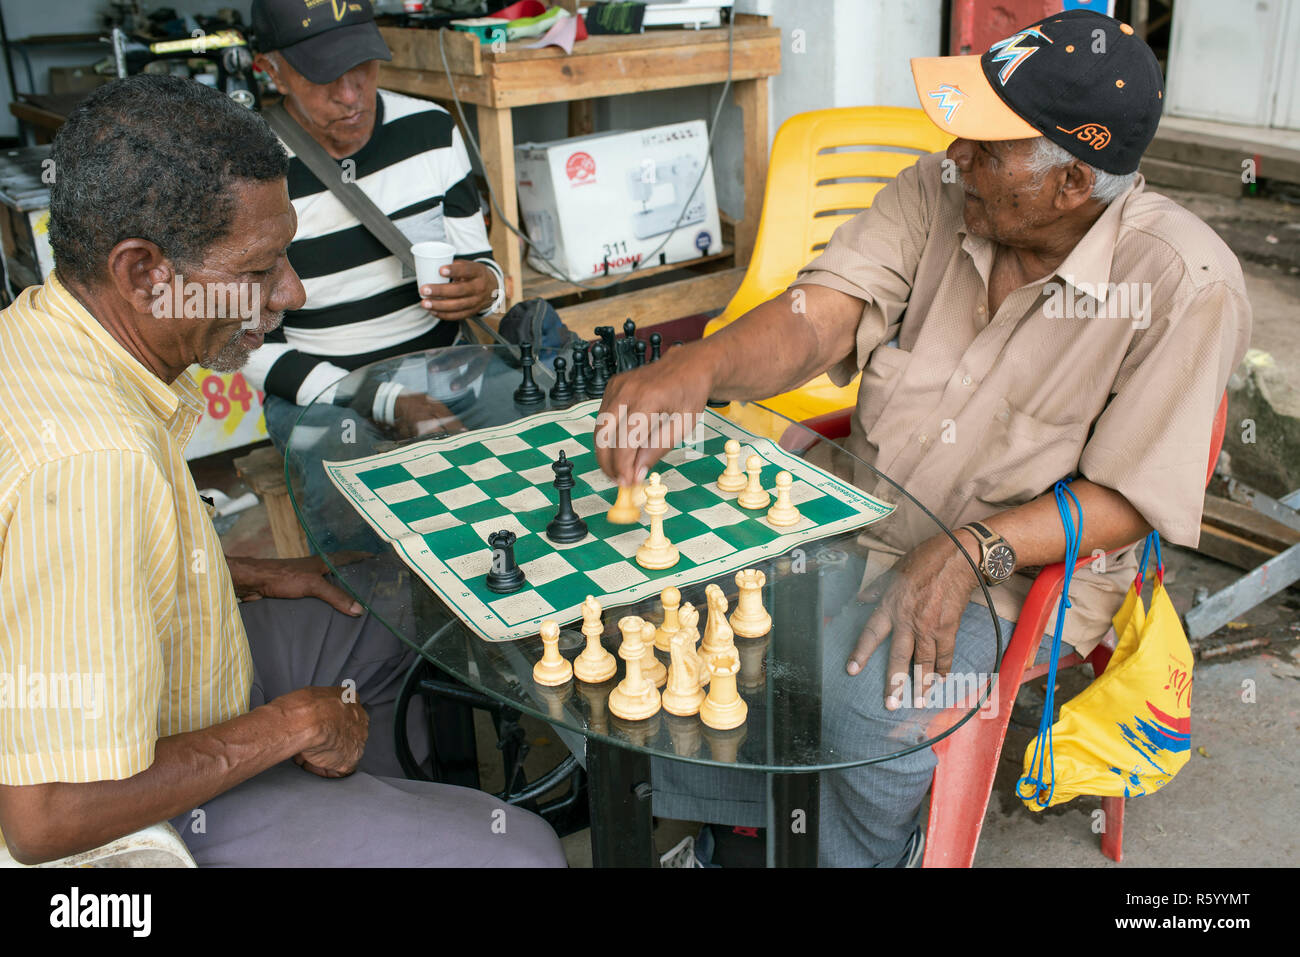 Les hommes afro-colombiennes en jouant aux échecs à l'extérieur d'un atelier de réparation de machines à coudre. Vie quotidienne à Cartagena de Indias, Colombie. Oct 2018 Banque D'Images